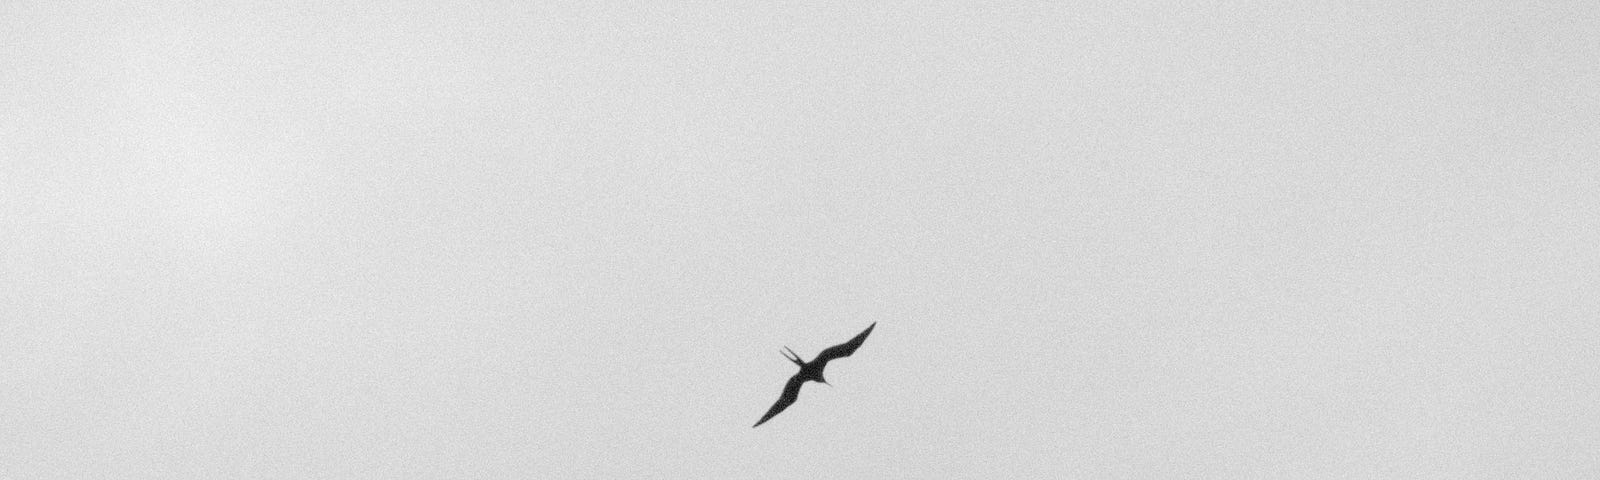 A lonely bird flies in the vast empty sky.